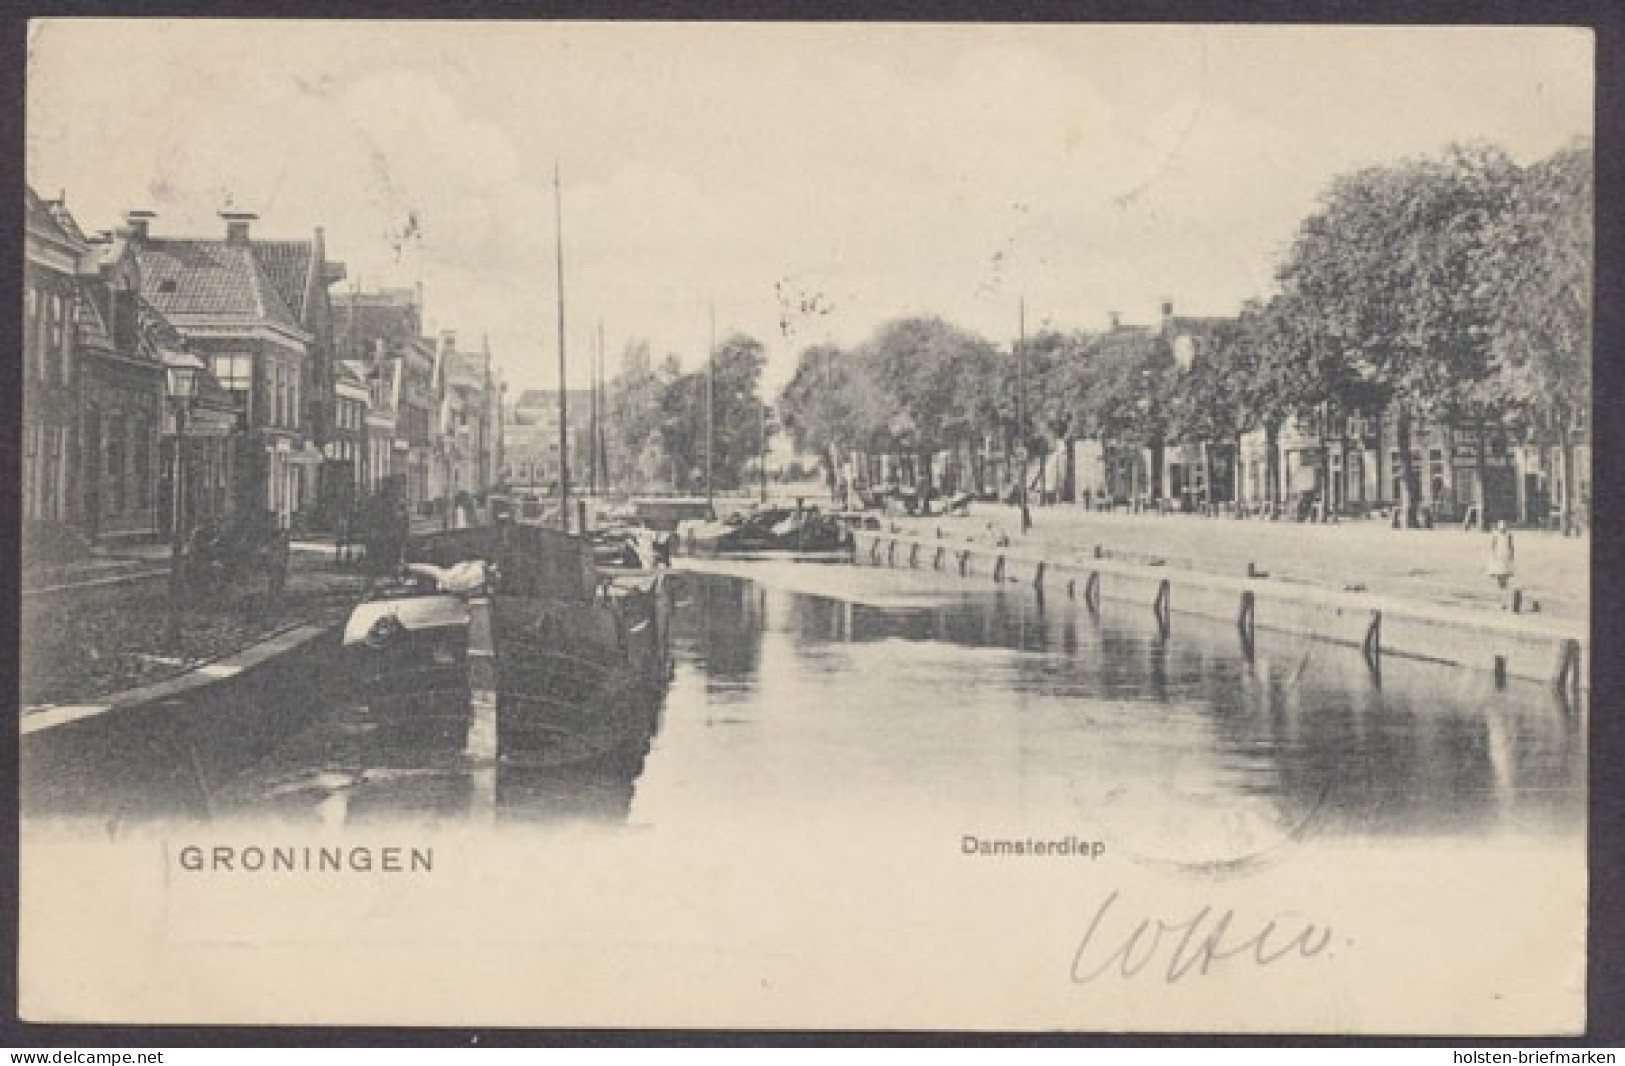 Gronungen, Damsterdiep - Groningen